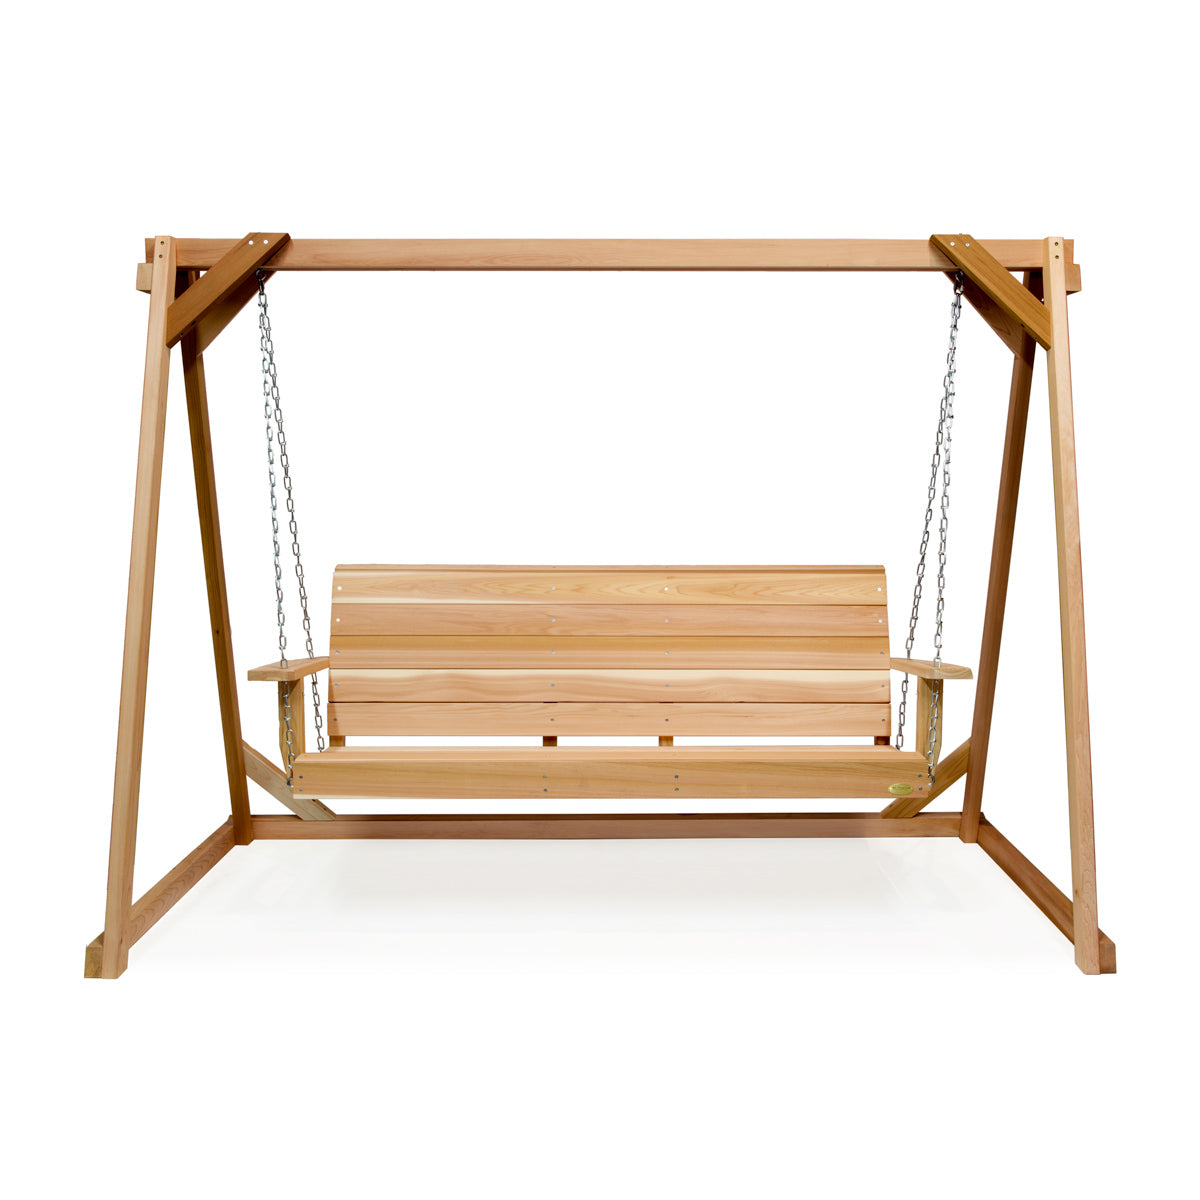 8 ft Cedar Swing Set